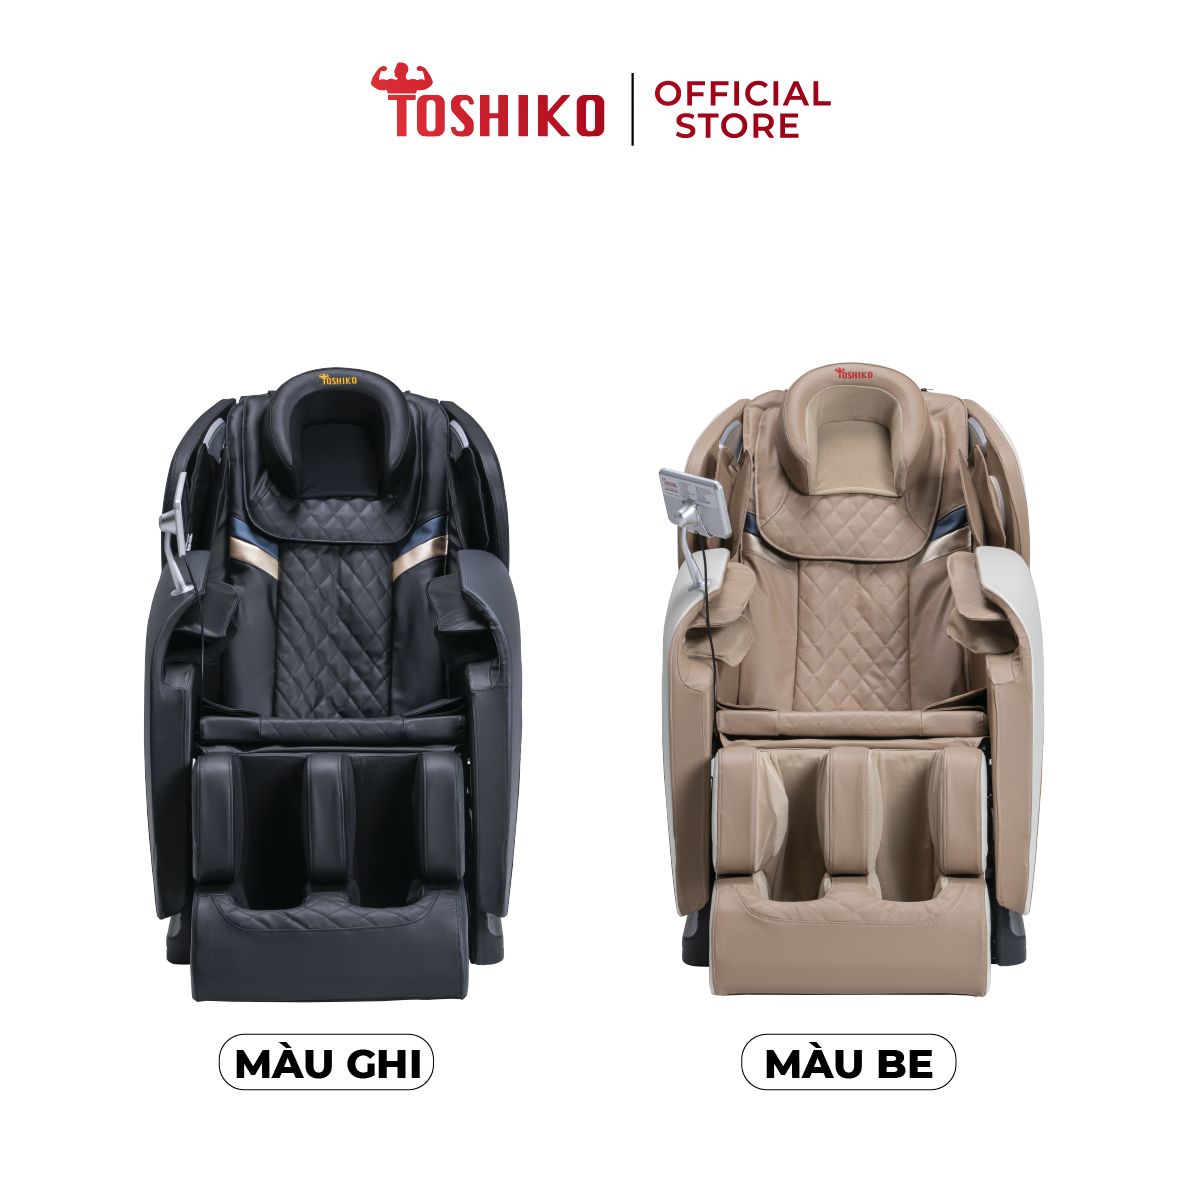 Ghế massage trị liệu toàn thân Toshiko T21